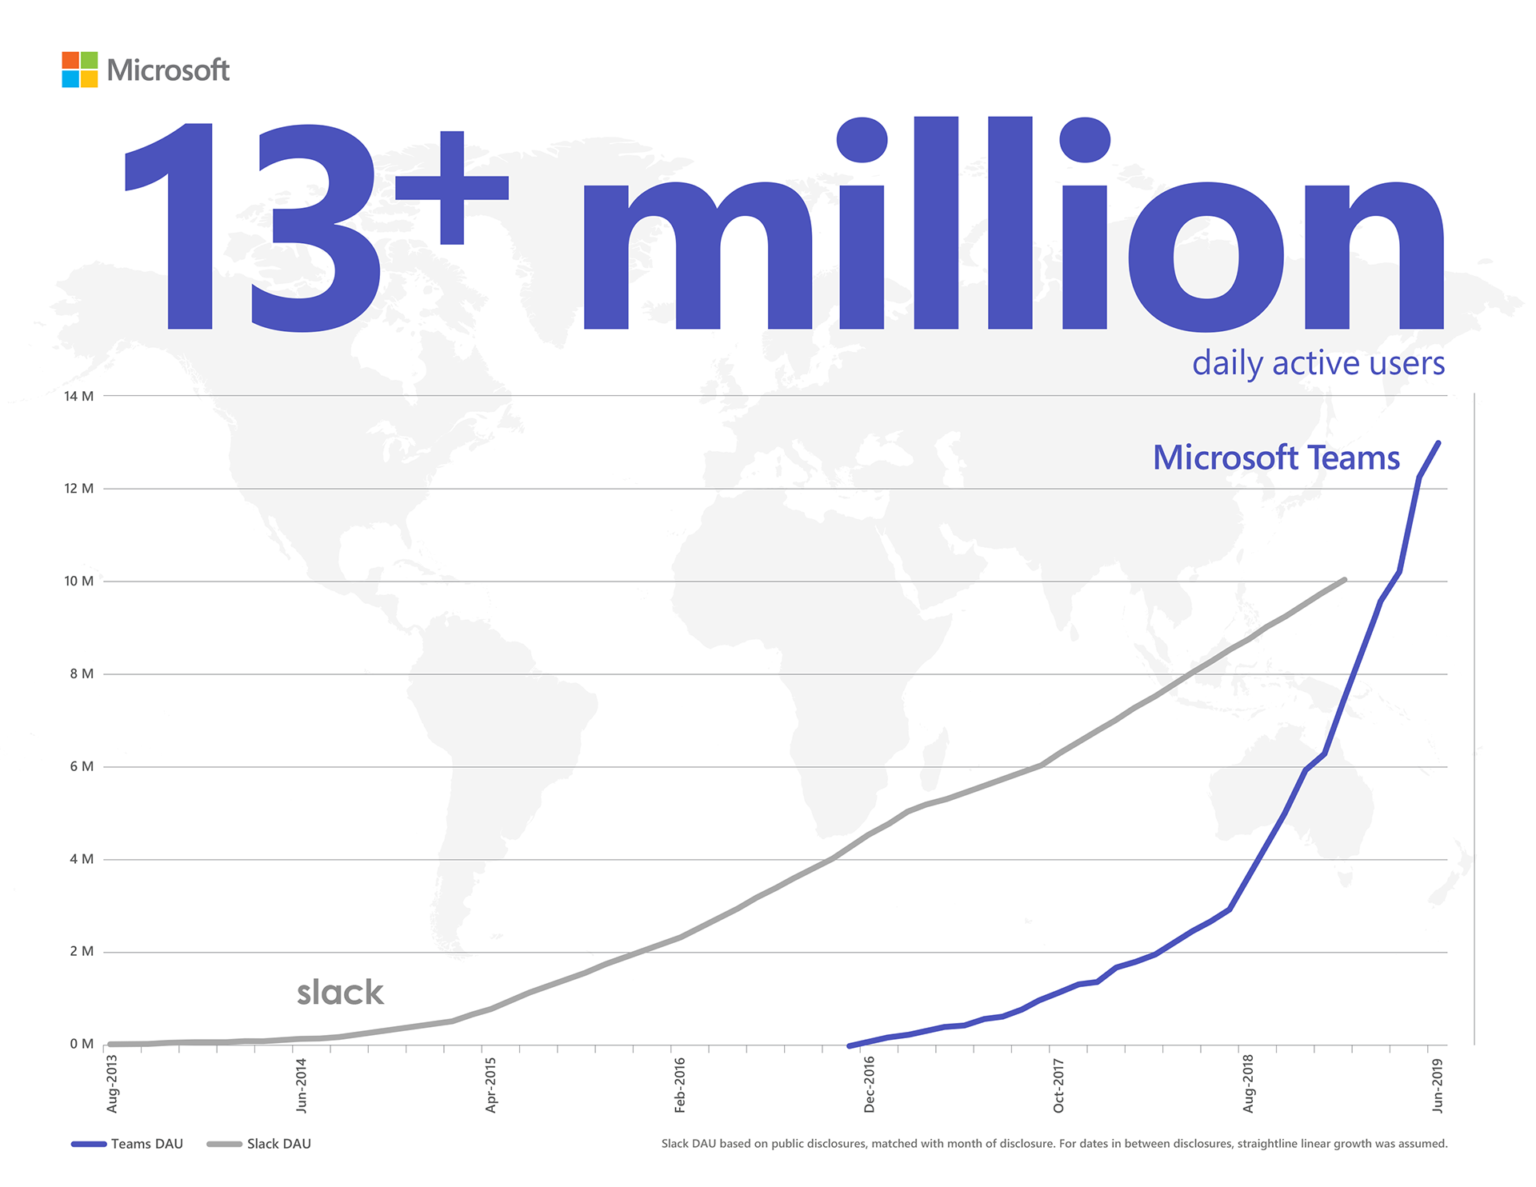 مخطط بياني للمعلومات يعرض Microsoft Teams متفوقاً على Slack في عدد المستخدمين النشطين يومياً بأكثر من 13 مليون.مستخدم نشط يومياً استناداً إلى الإفصاحات العامة، المتطابقة مع شهر الإفصاح. بالنسبة إلى التواريخ التي تقع بين الإفصاحات، تم افتراض النمو الخطي الثابت.